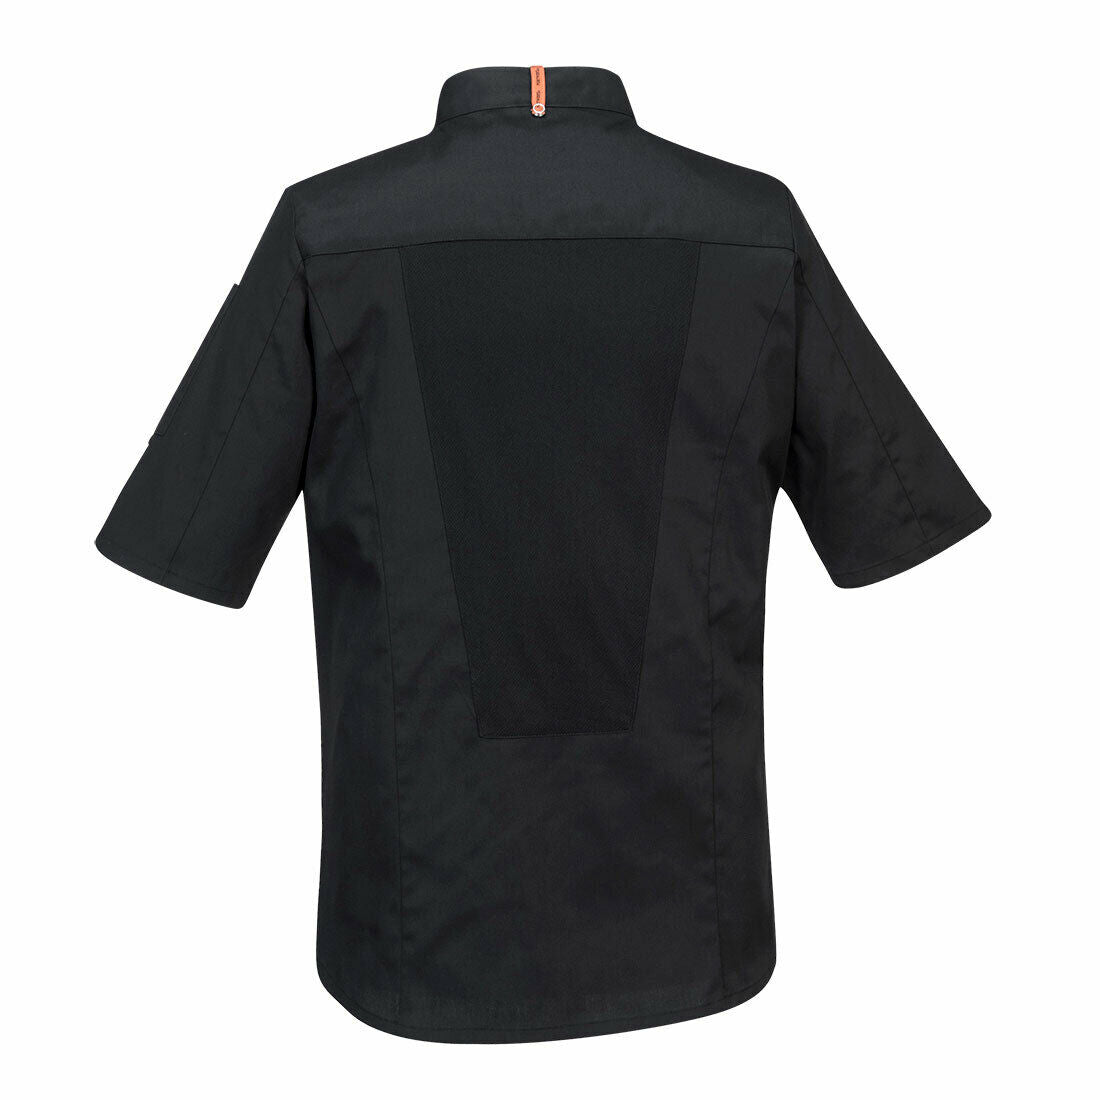 Portwest Mens MeshAir Pro Chefs Jacket S/S Slim Fit Apron Durable Comfy C738-Collins Clothing Co